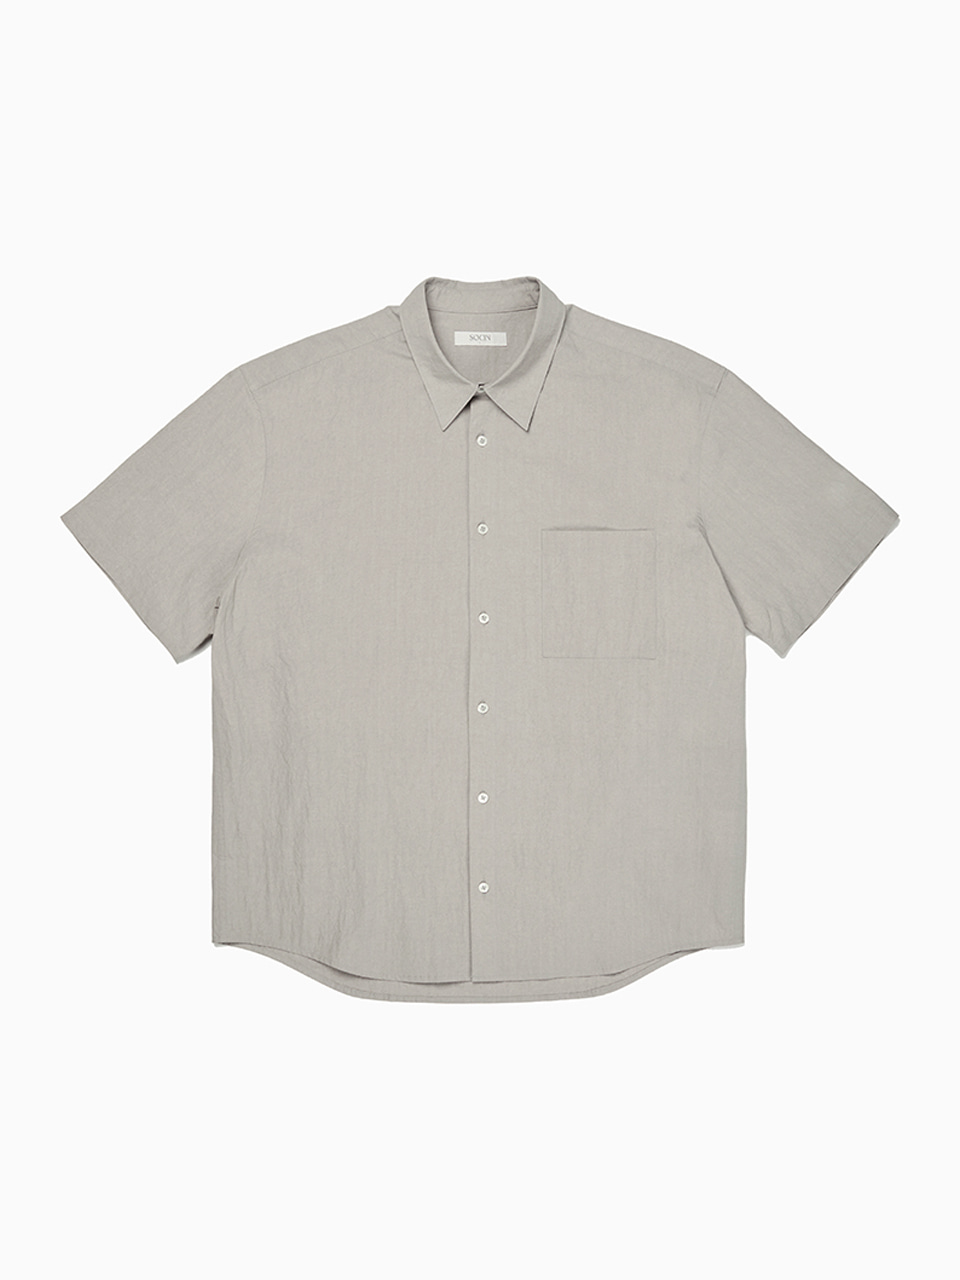 Crease Cotton Half Shirts (Gray)